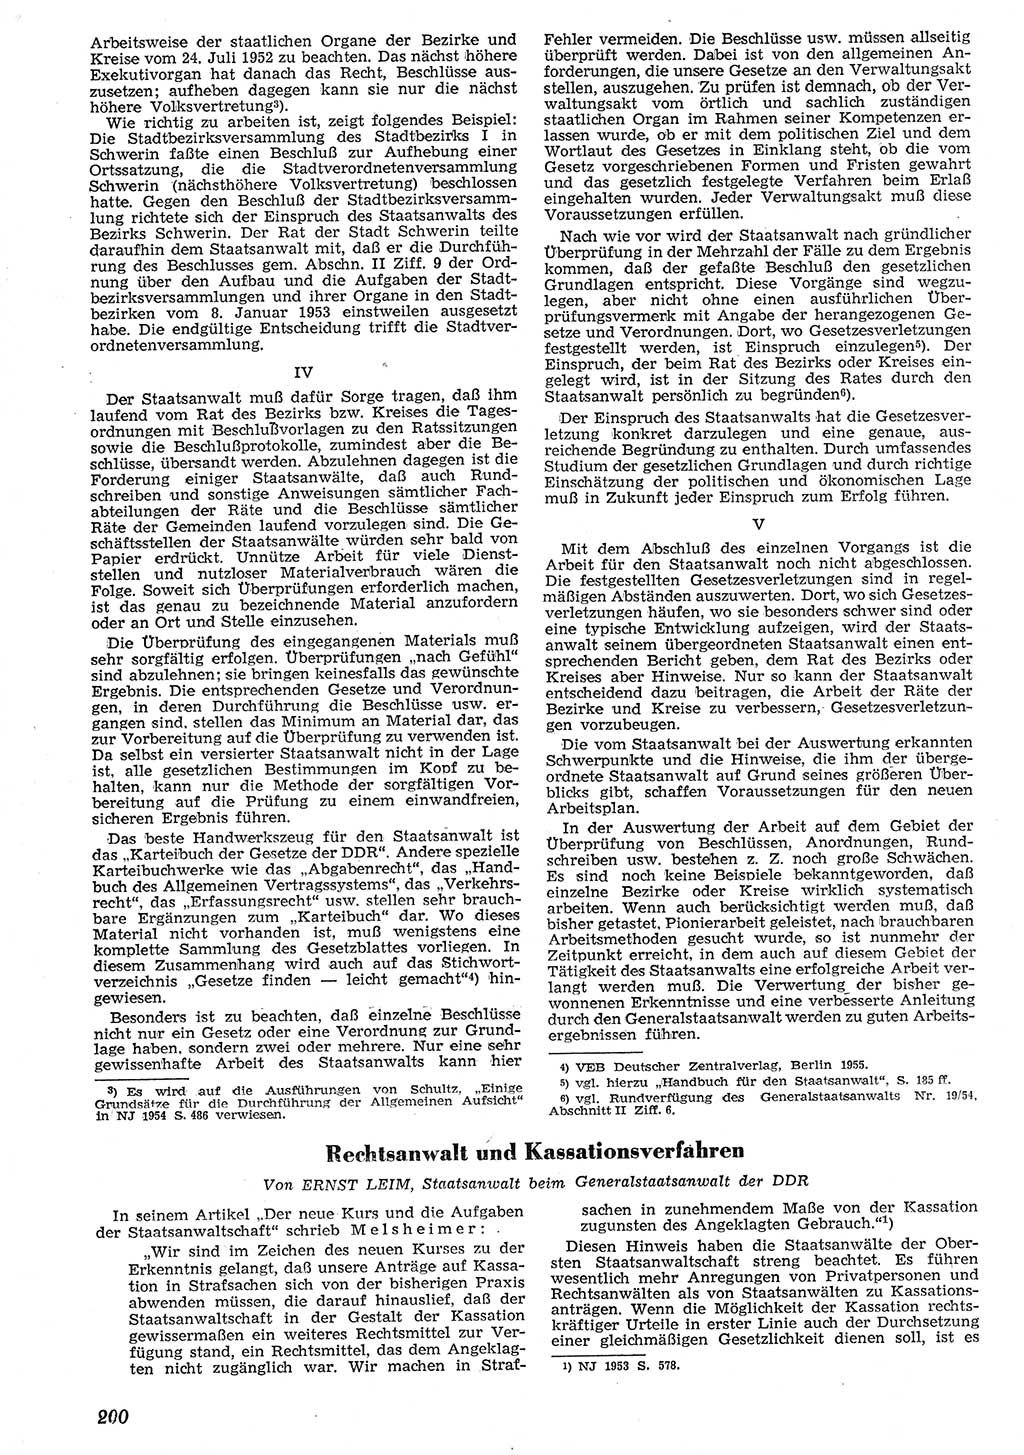 Neue Justiz (NJ), Zeitschrift für Recht und Rechtswissenschaft [Deutsche Demokratische Republik (DDR)], 10. Jahrgang 1956, Seite 200 (NJ DDR 1956, S. 200)